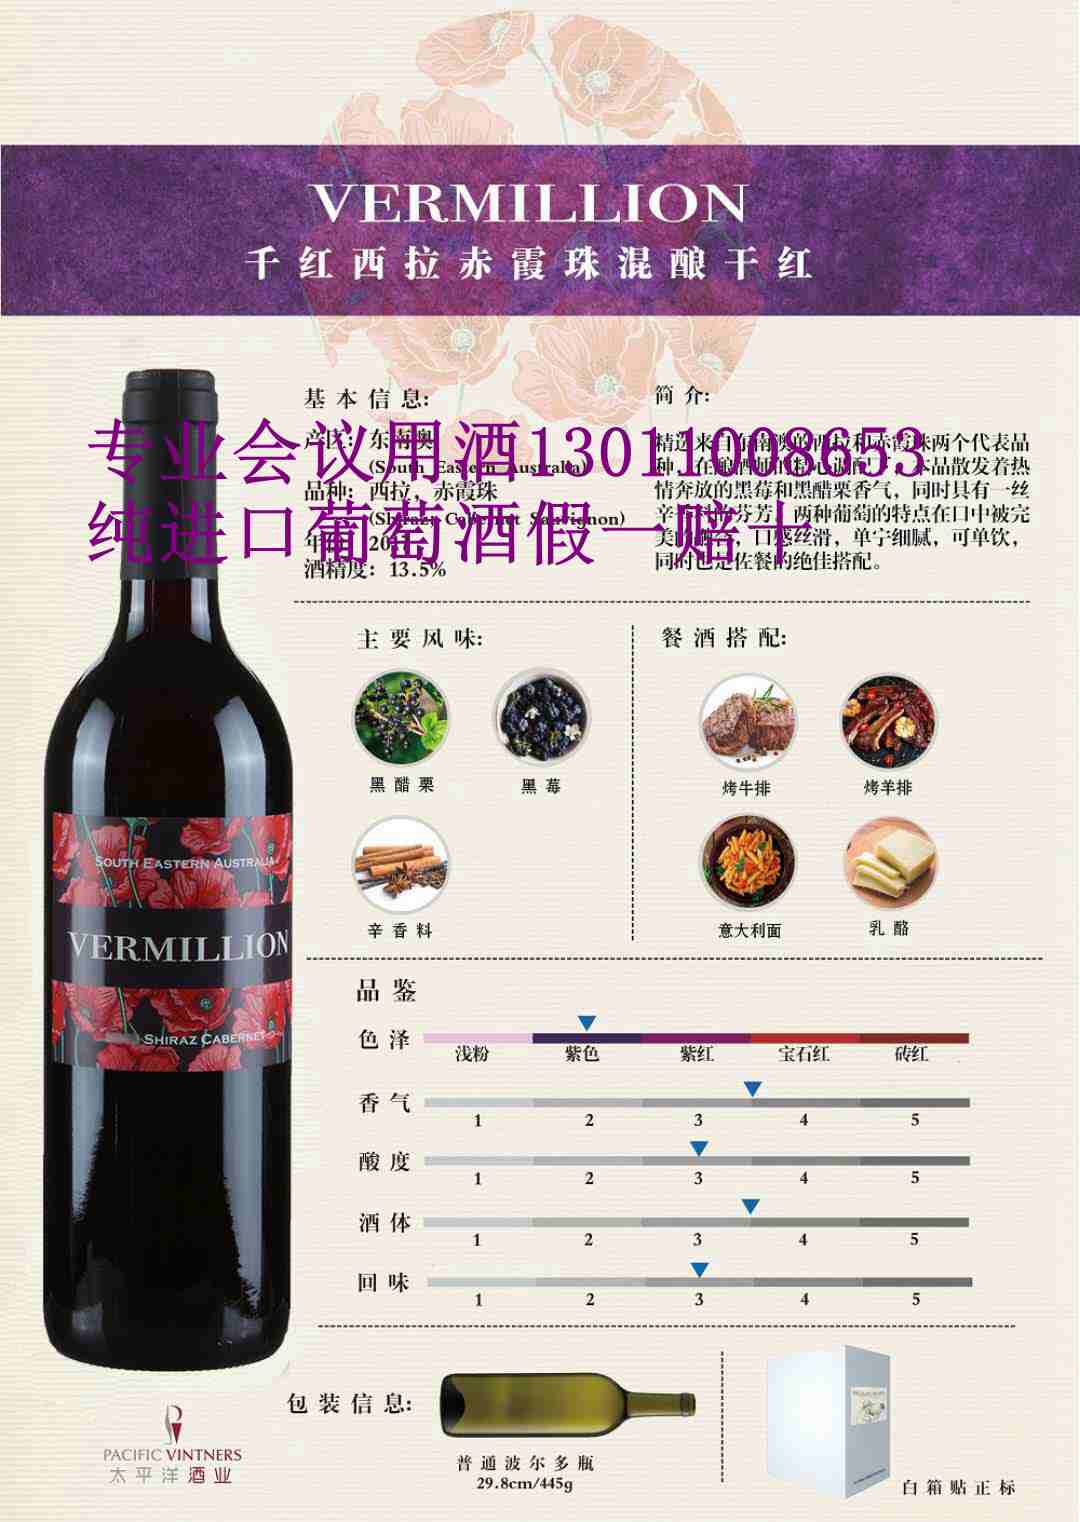 会议用酒 上海纯正的进口葡萄酒假一赔十图片